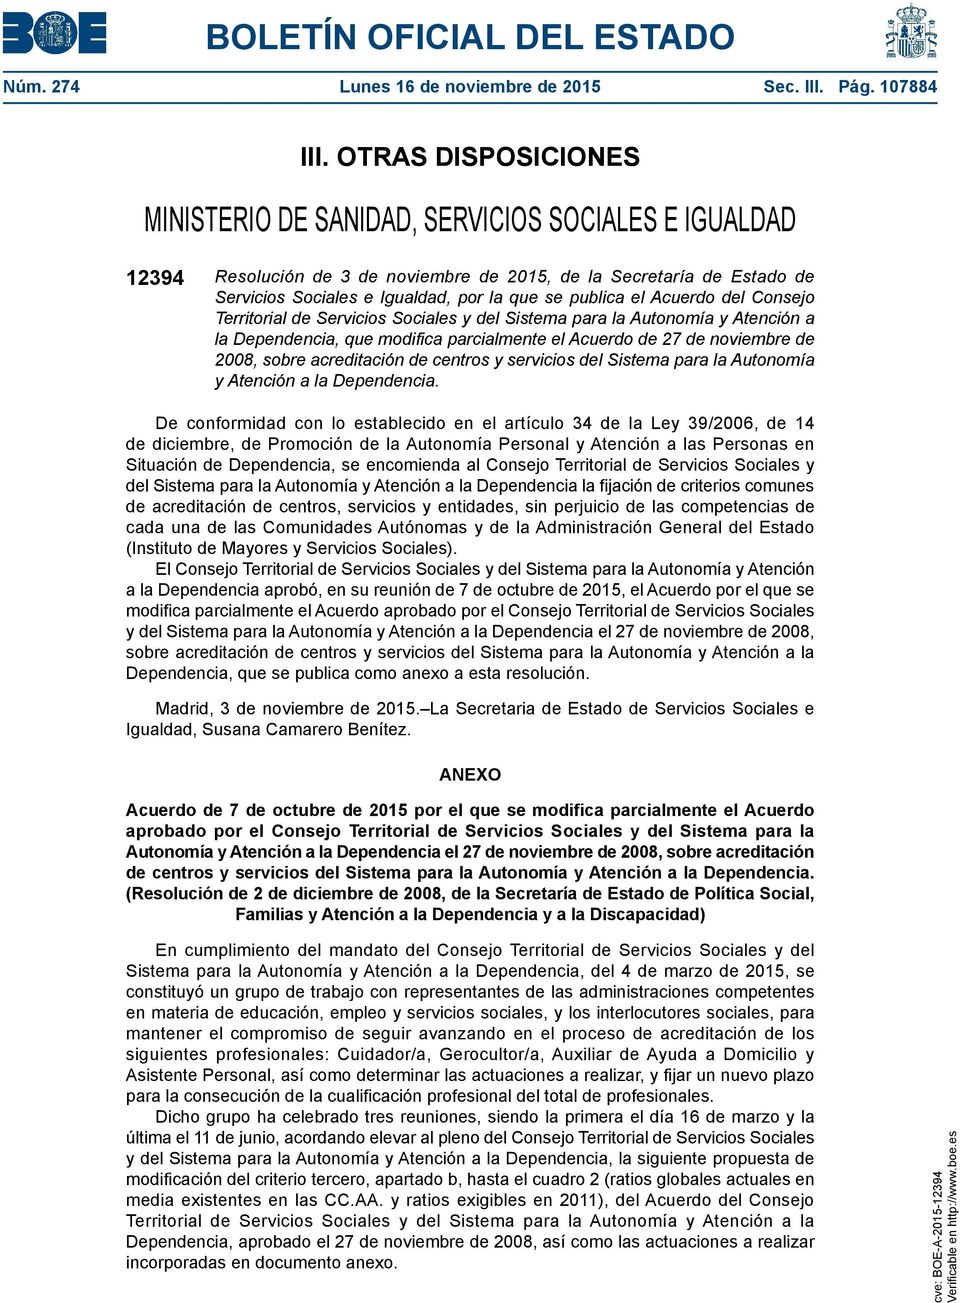 el Acuerdo del Consejo Territorial de Servicios Sociales y del Sistema para la Autonomía y Atención a la Dependencia, que modifica parcialmente el Acuerdo de 27 de noviembre de 2008, sobre